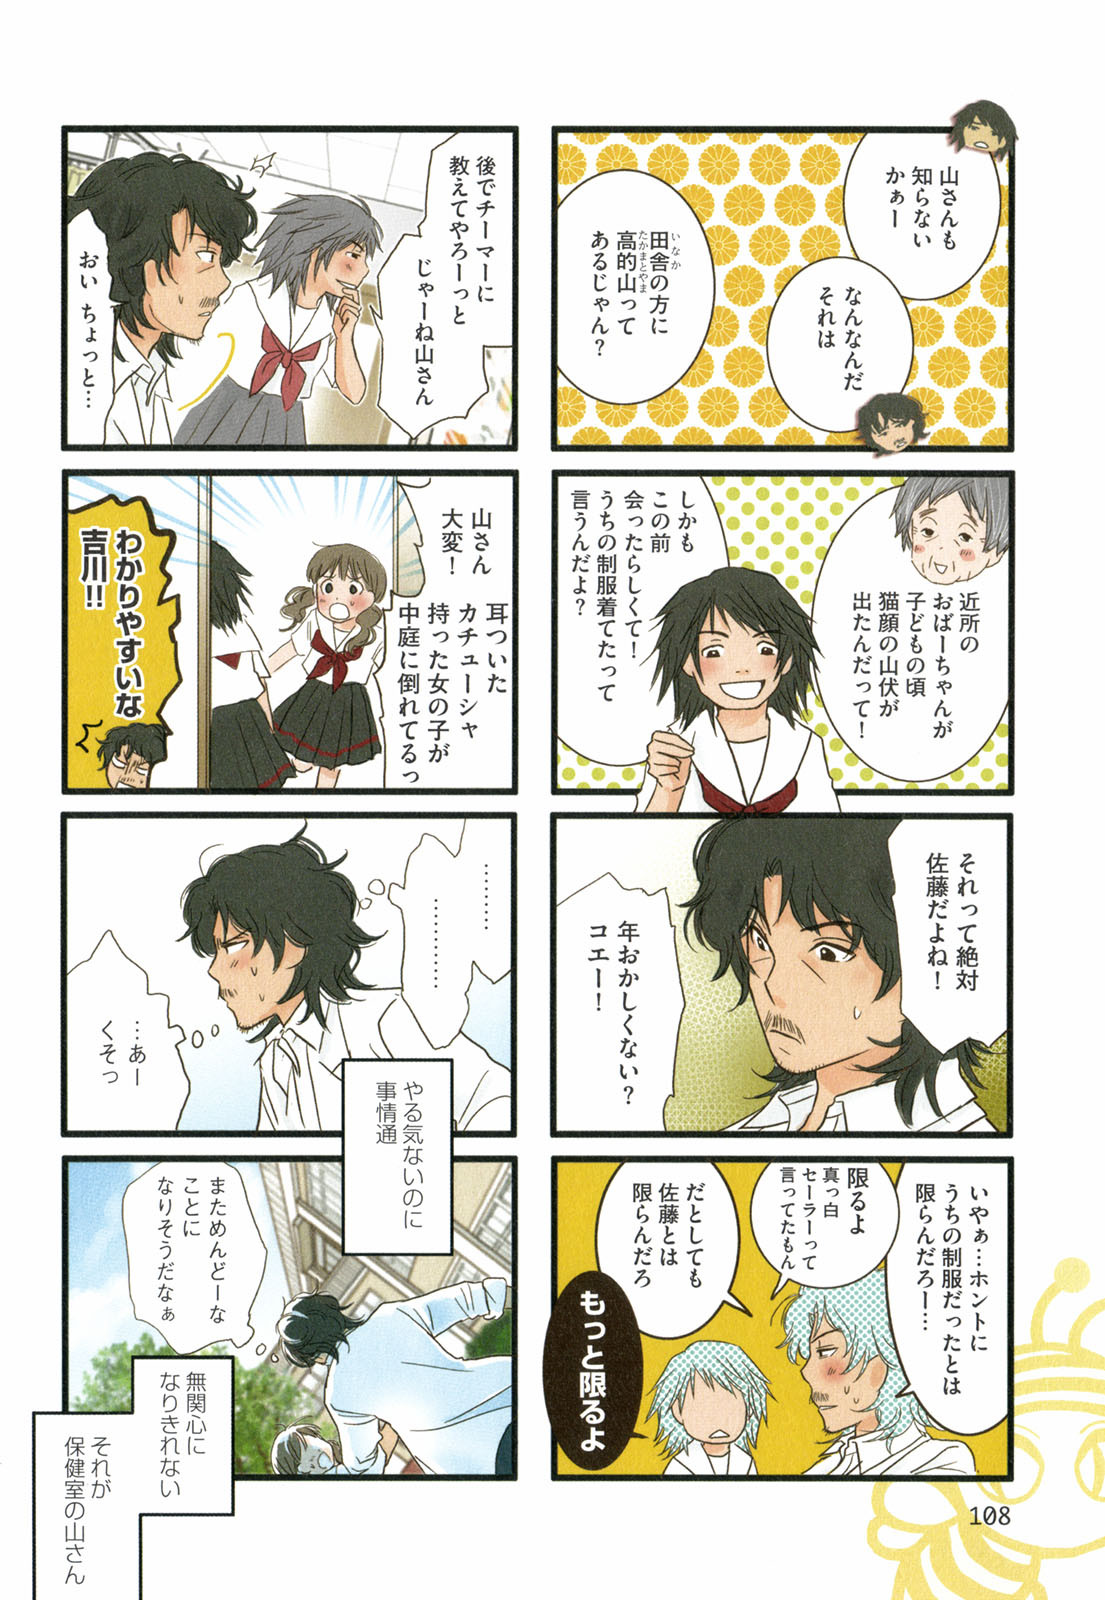 Tonari No Neneko San となりのネネコさん Chapter Volume 02 Page 109 Raw Sen Manga